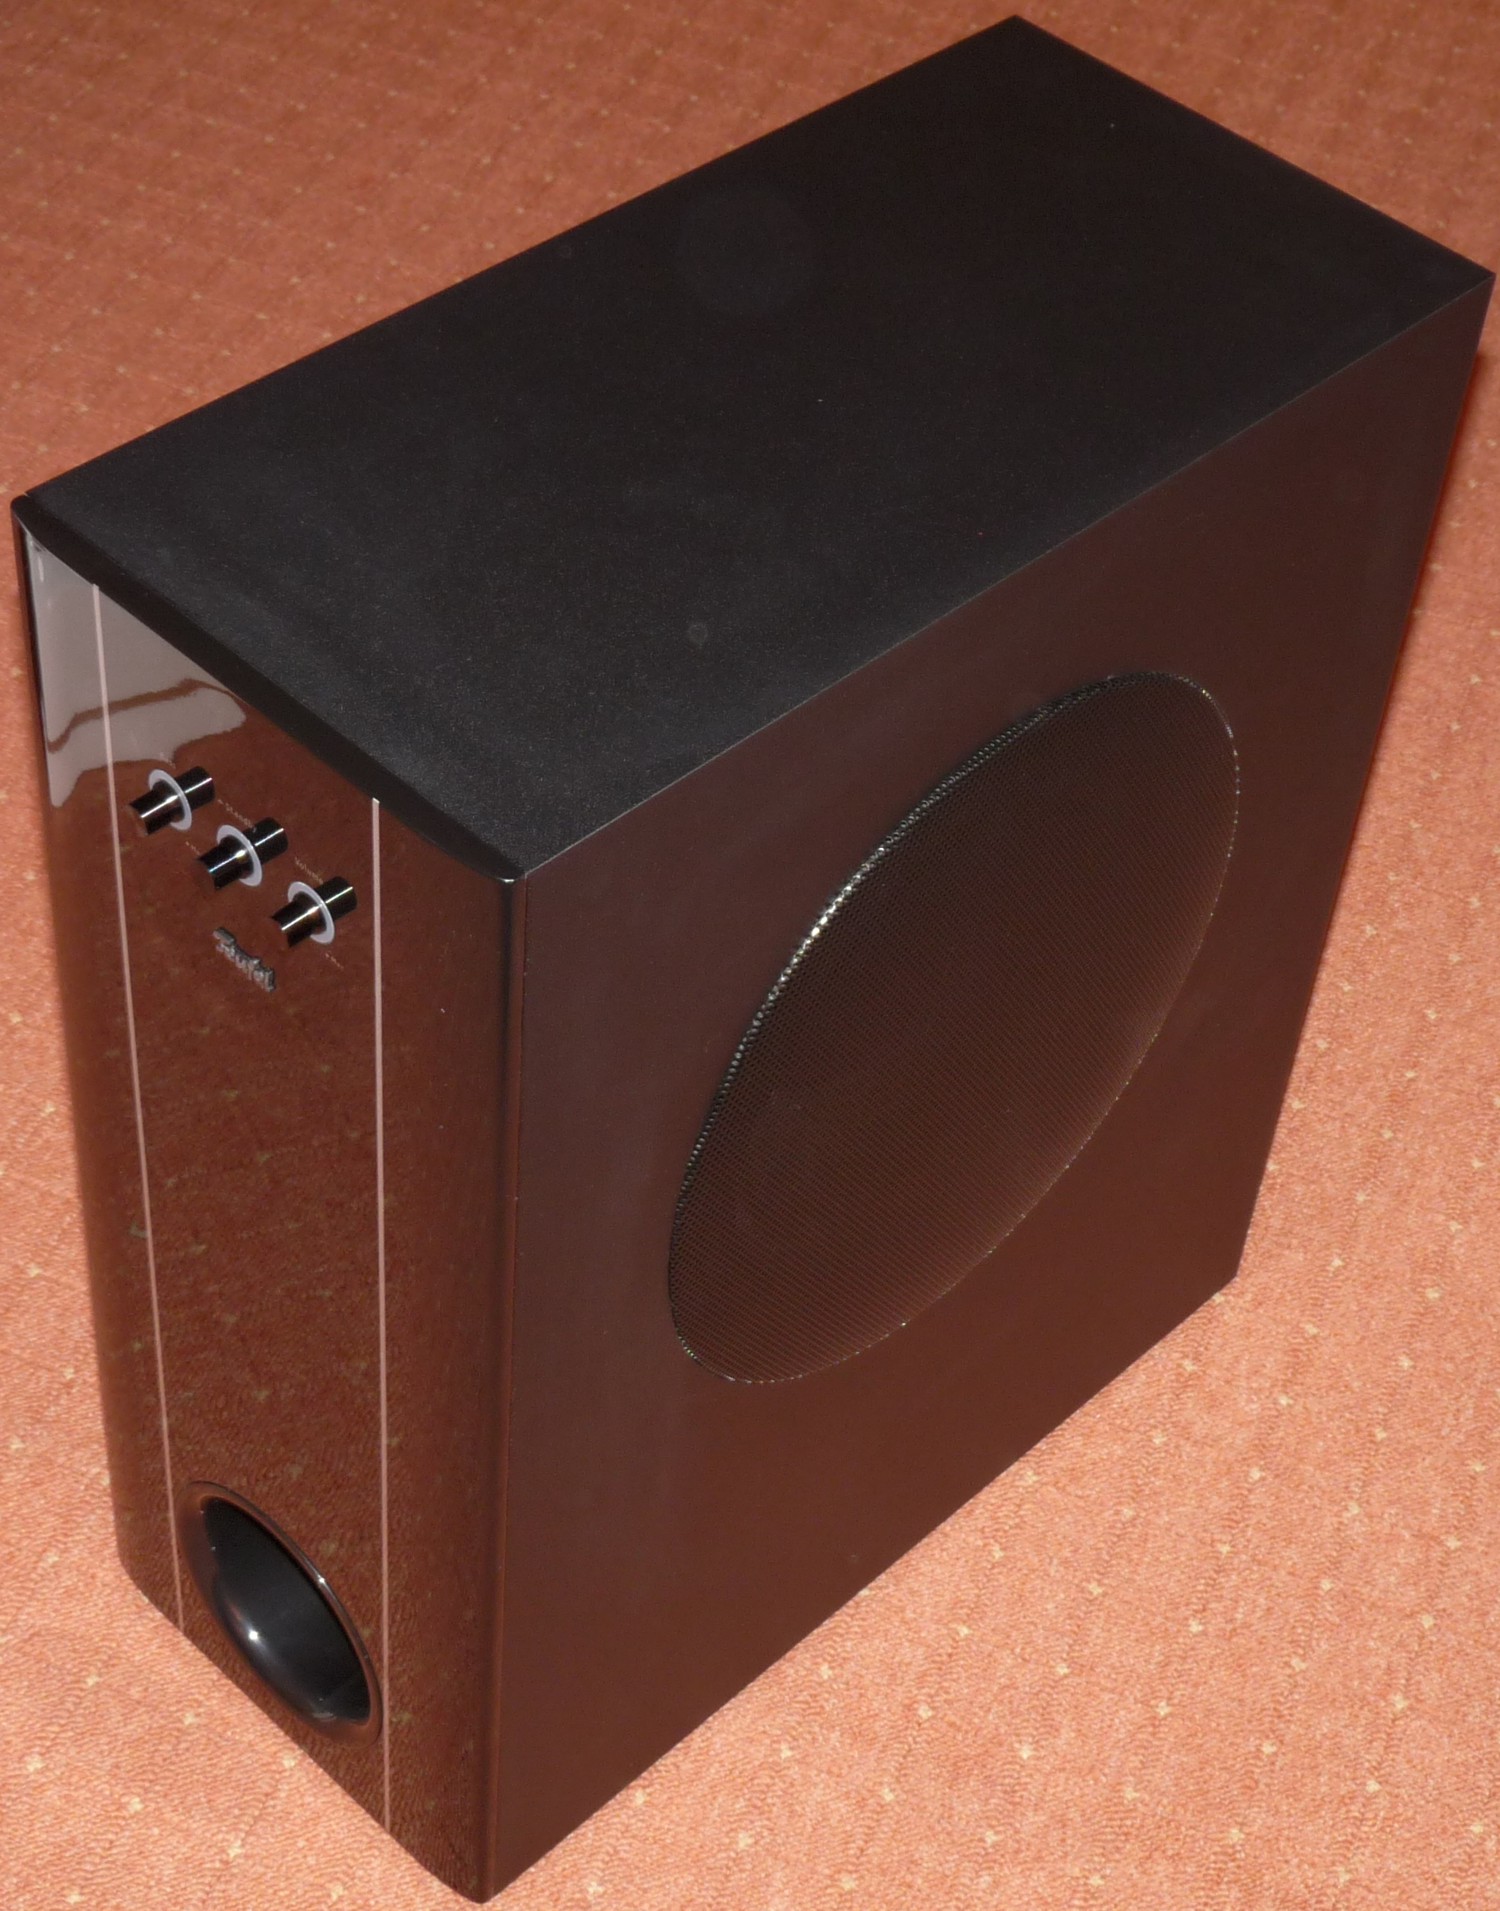 Teufel Concept E 400 5.1-Soundsystem – Seite 2 – Hartware